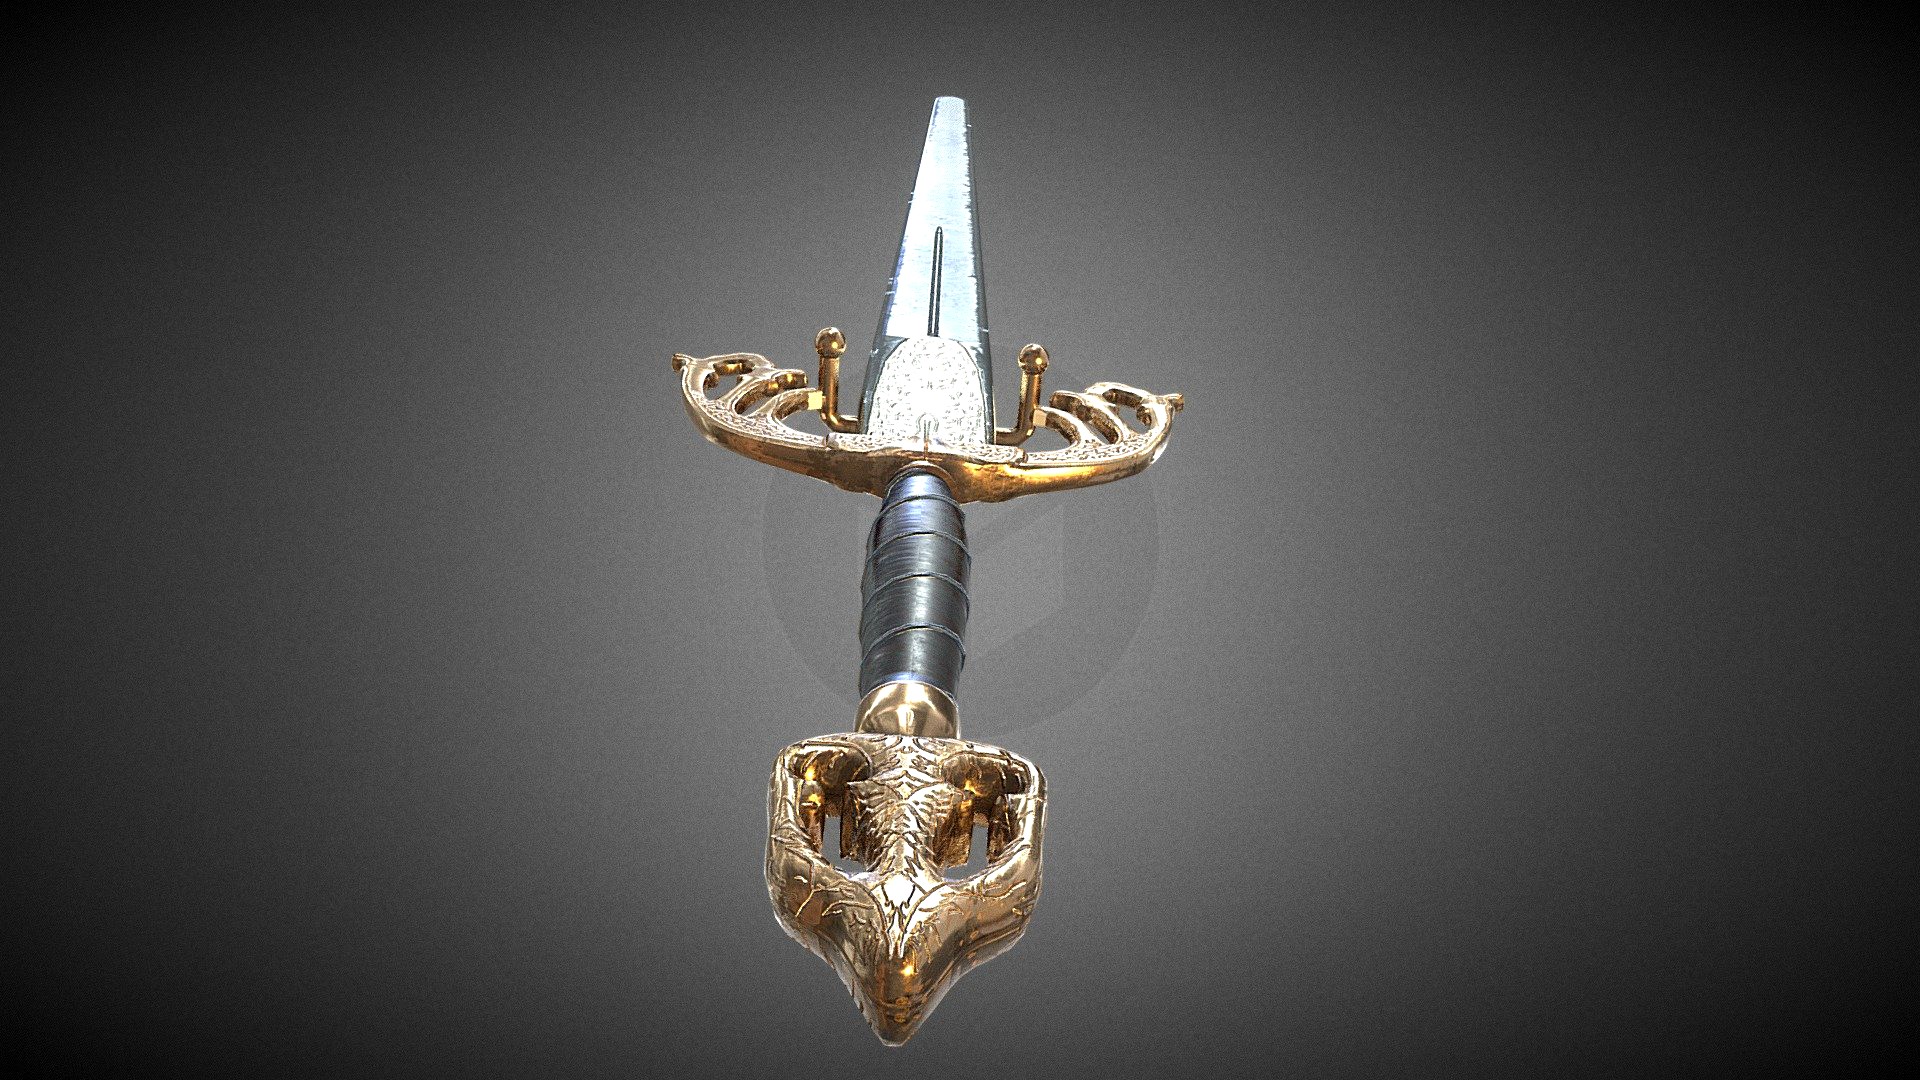 Tizona - legendary sword of El cid